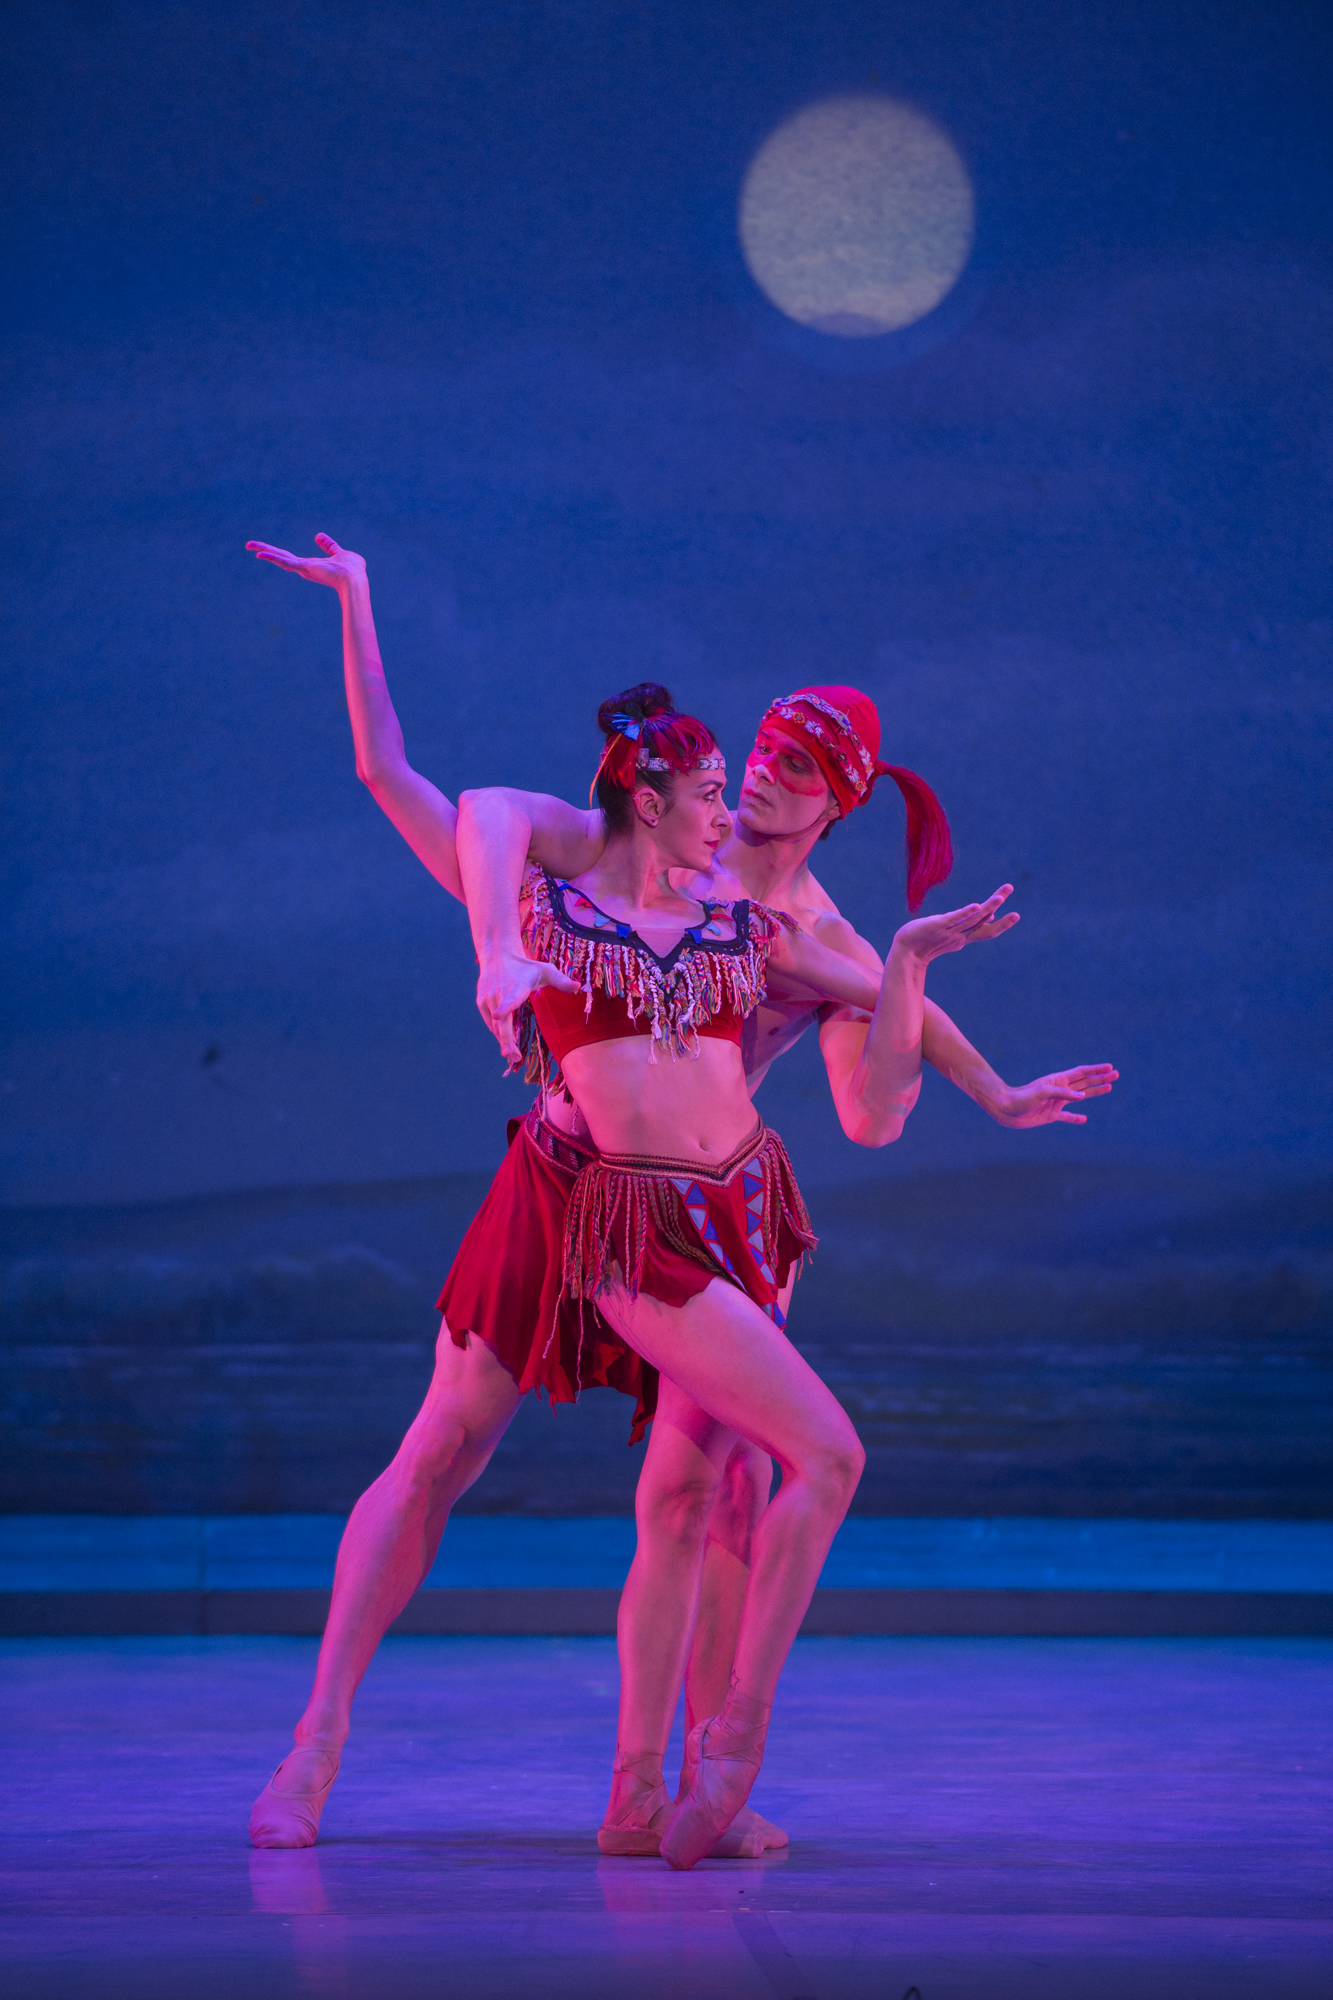 The Washington Ballet's Sona Kharatian and Tamas Krizsa perform a scene from "The Nutcracker." (Media4artists/Theo Kossenas)